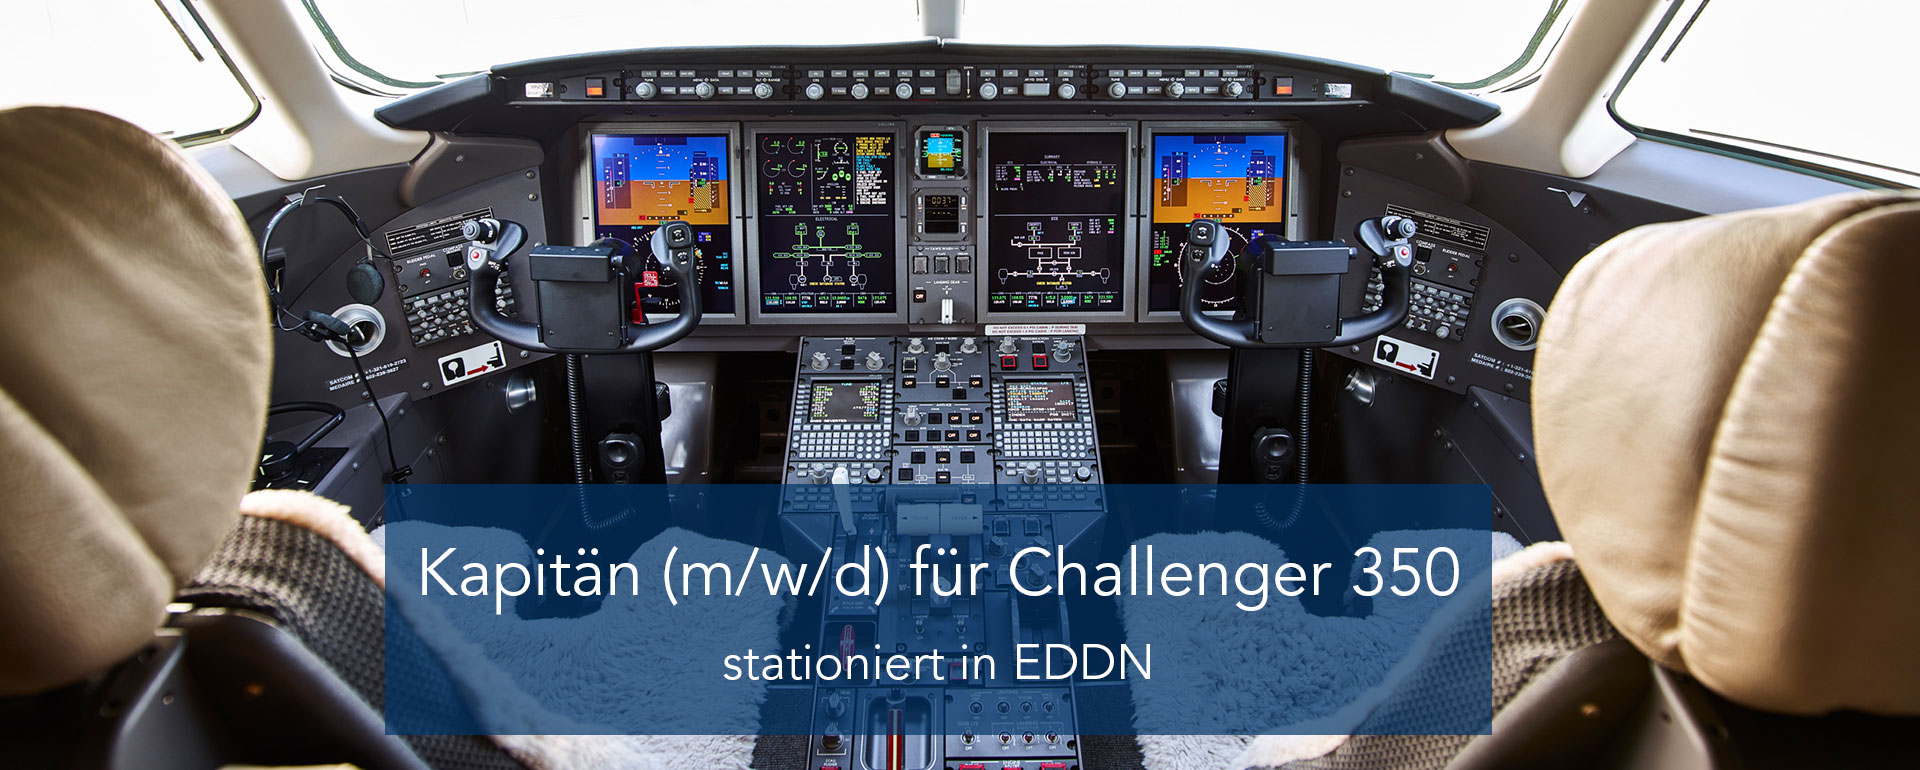 Kapitän (m/w/d) für Challenger 350 | stationiert in EDDN | Aero-Dienst GmbH 